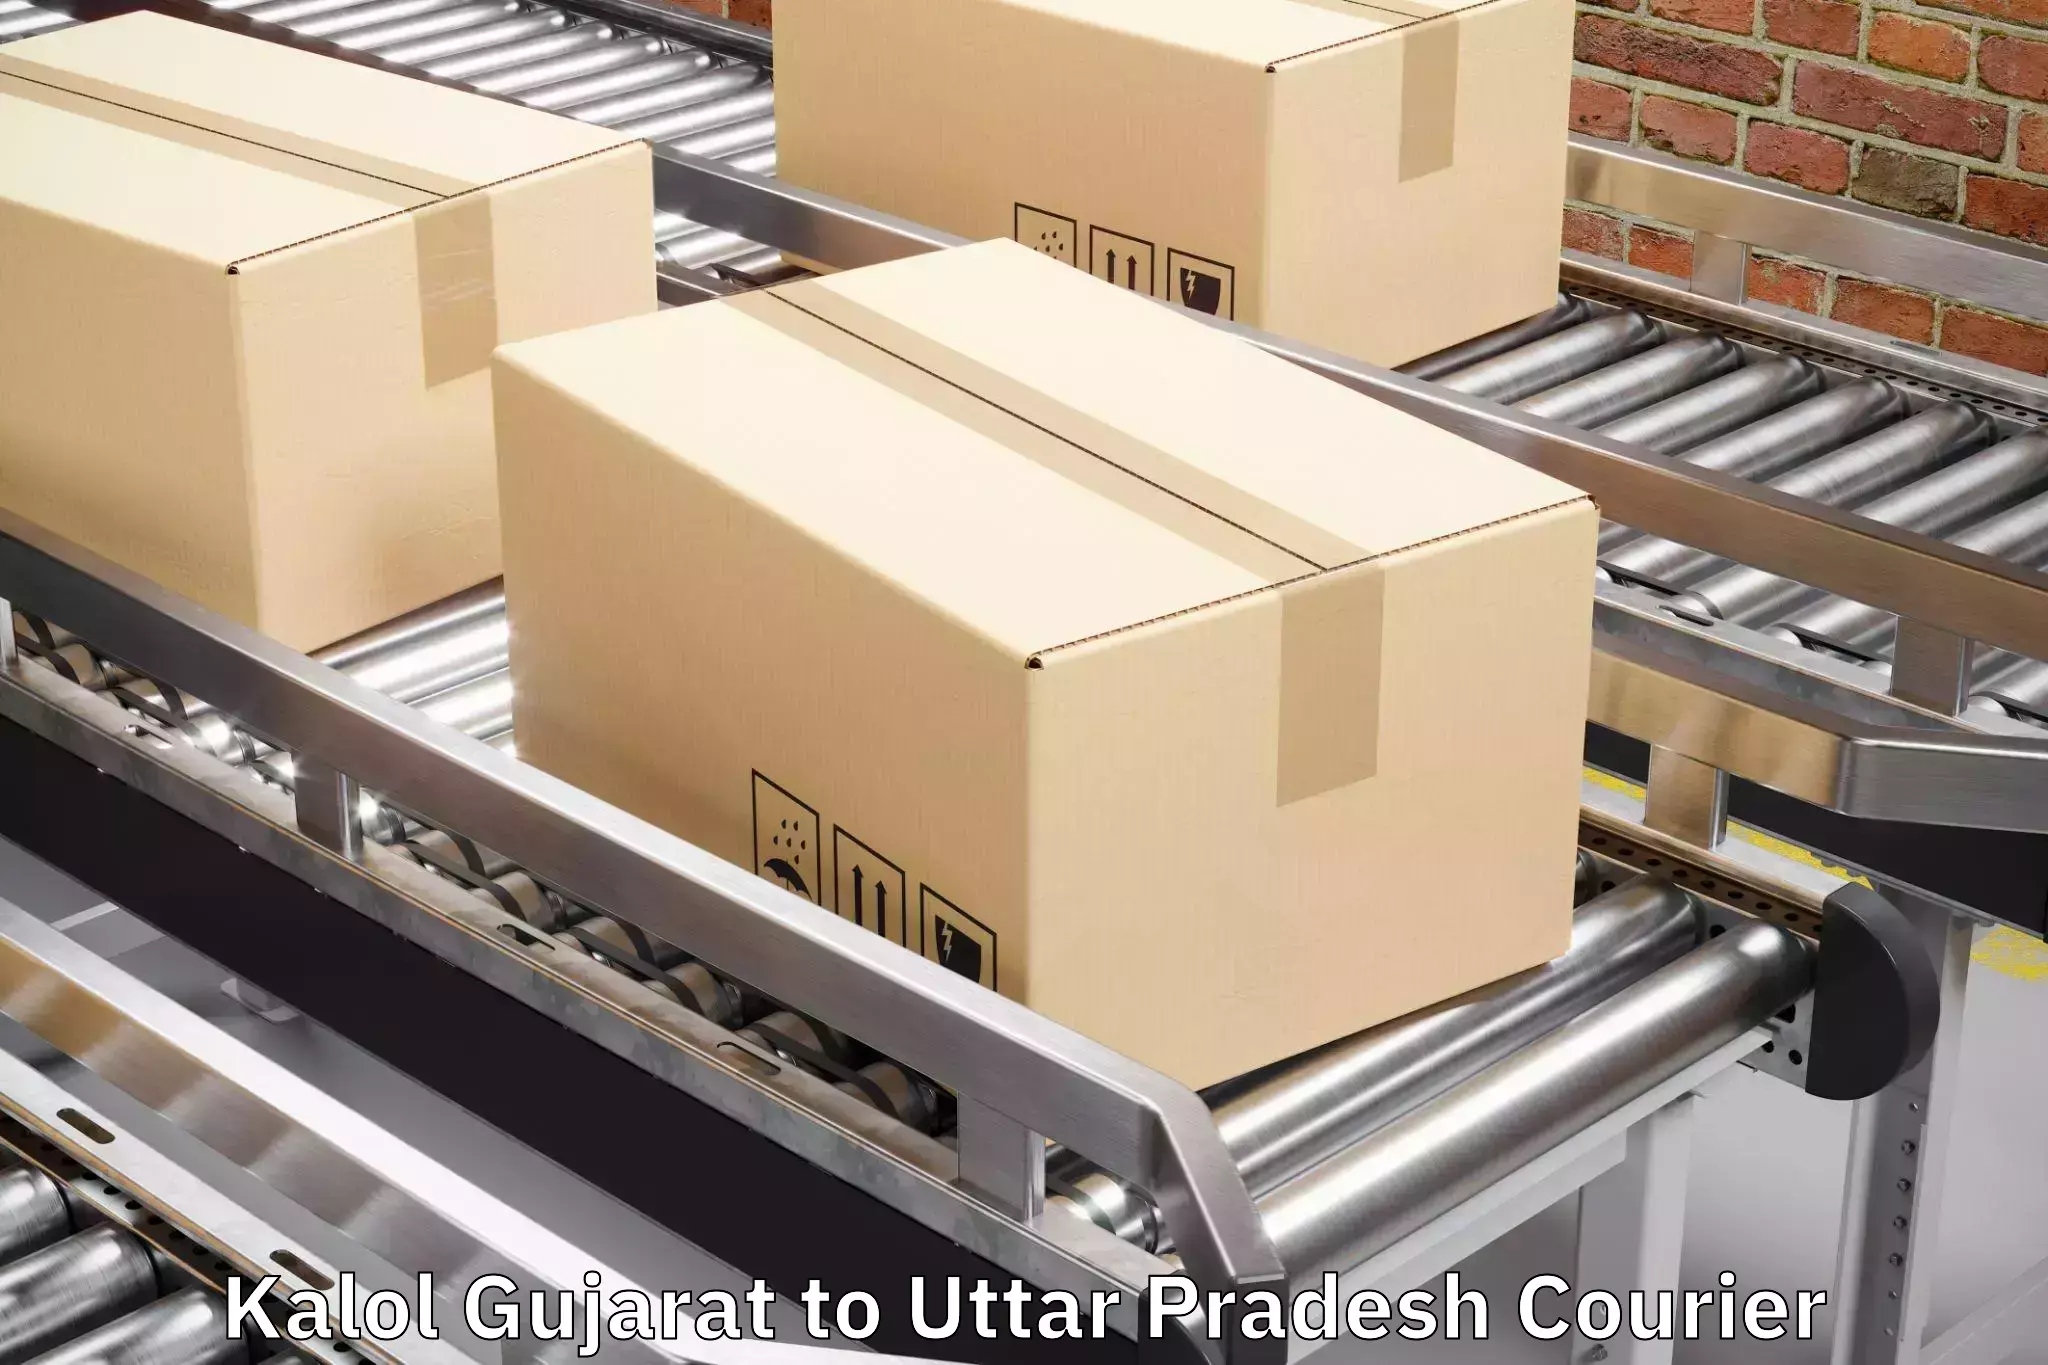 Baggage delivery solutions Kalol Gujarat to Gauri Bazar